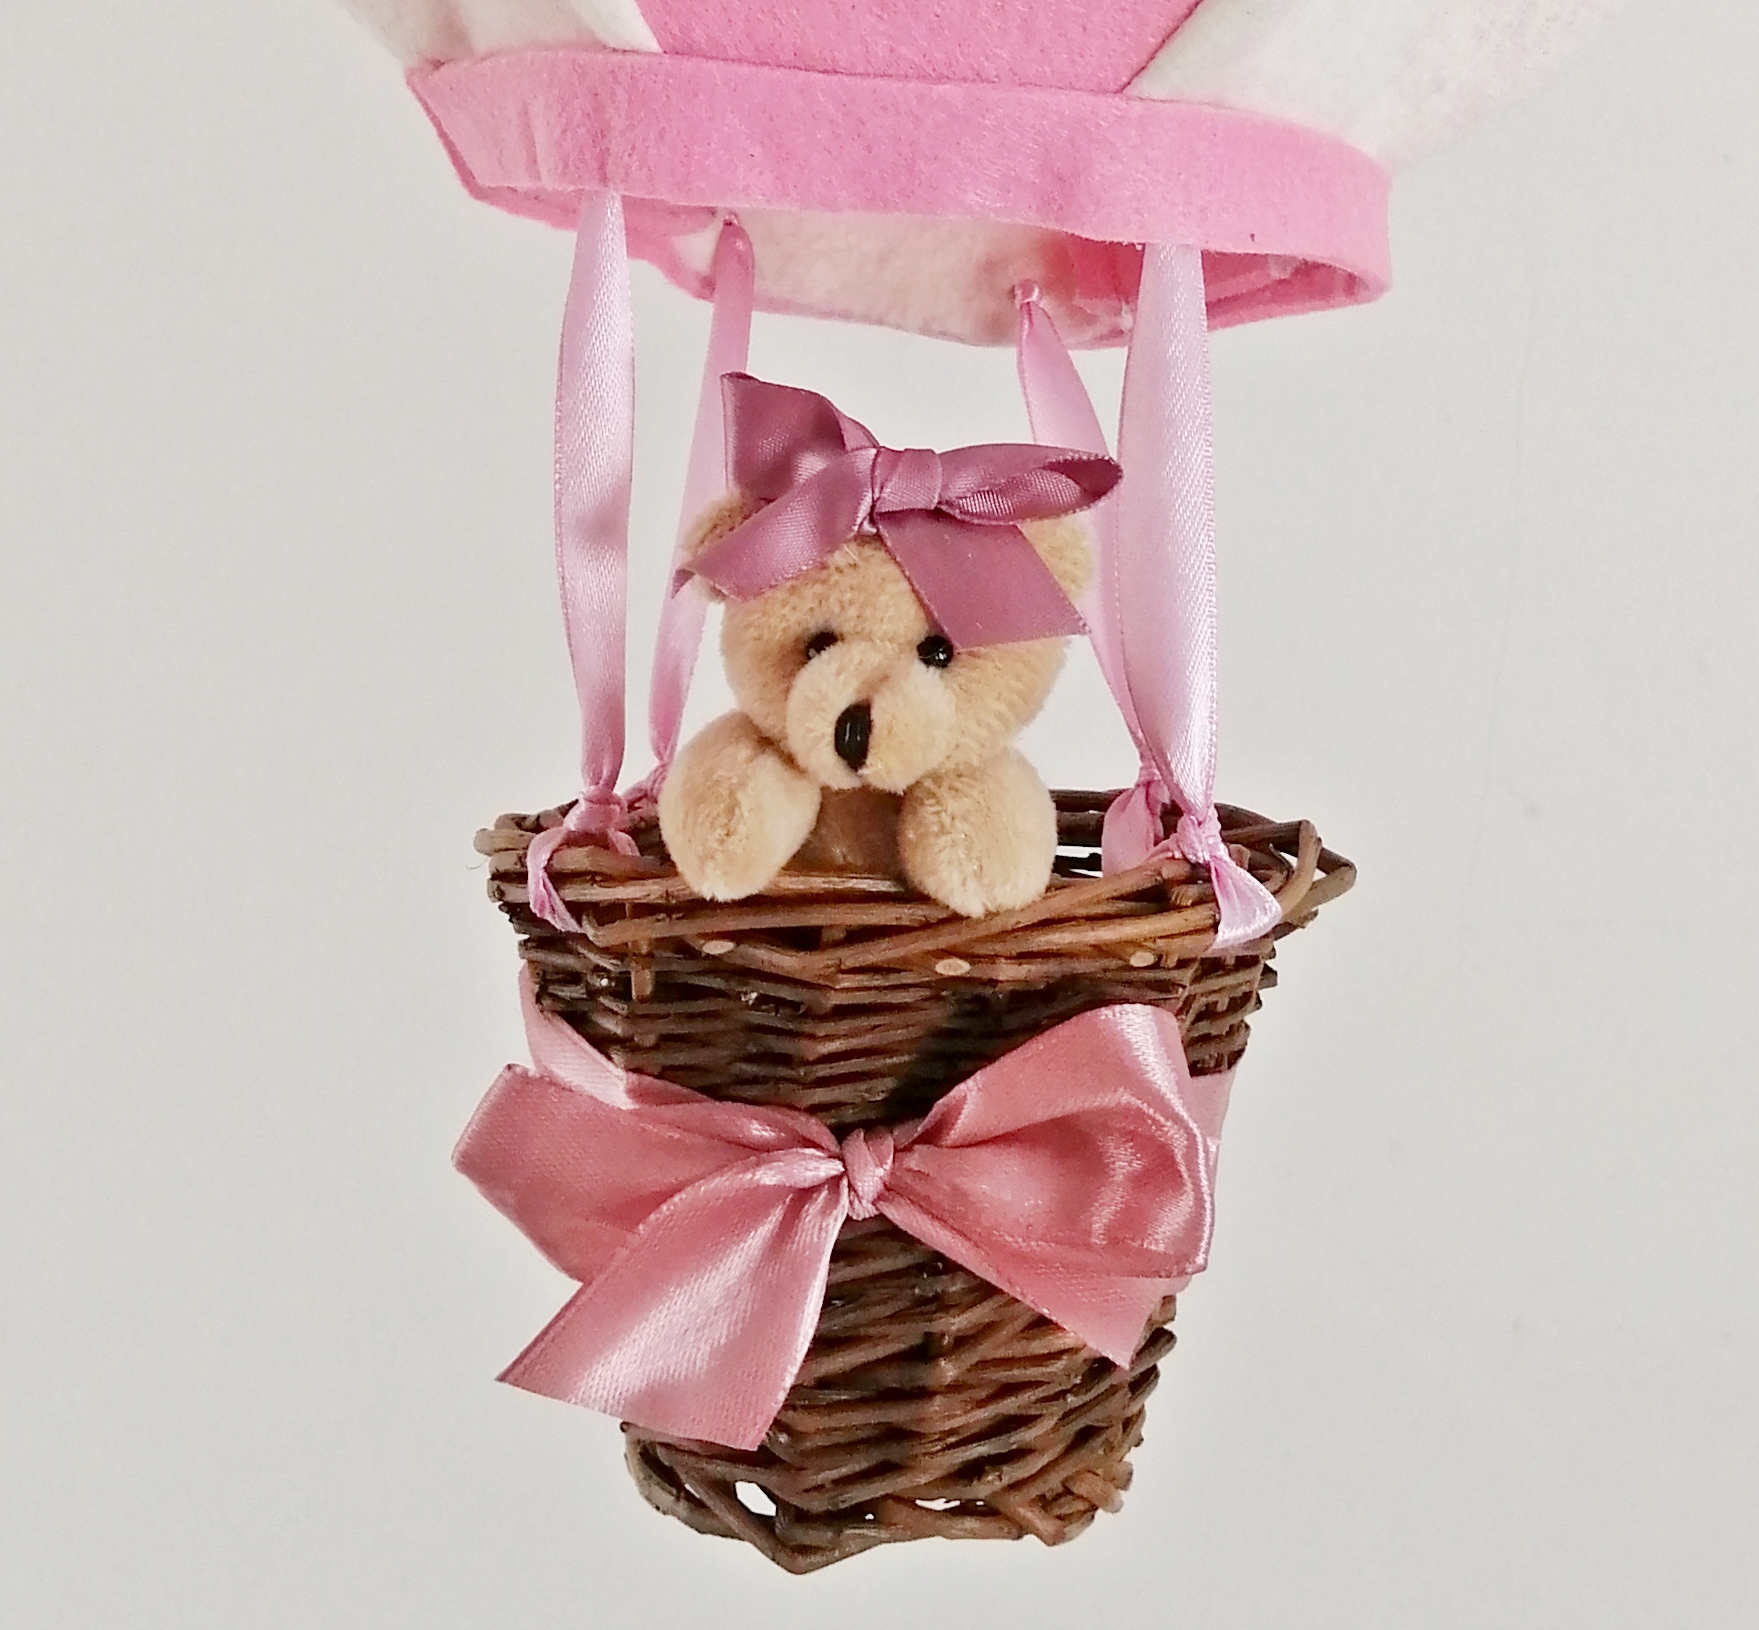 montgolfiere-decoration-enfant-bebe-suspension-mobile-rose-vieux-blanc-beige-fille-chambre